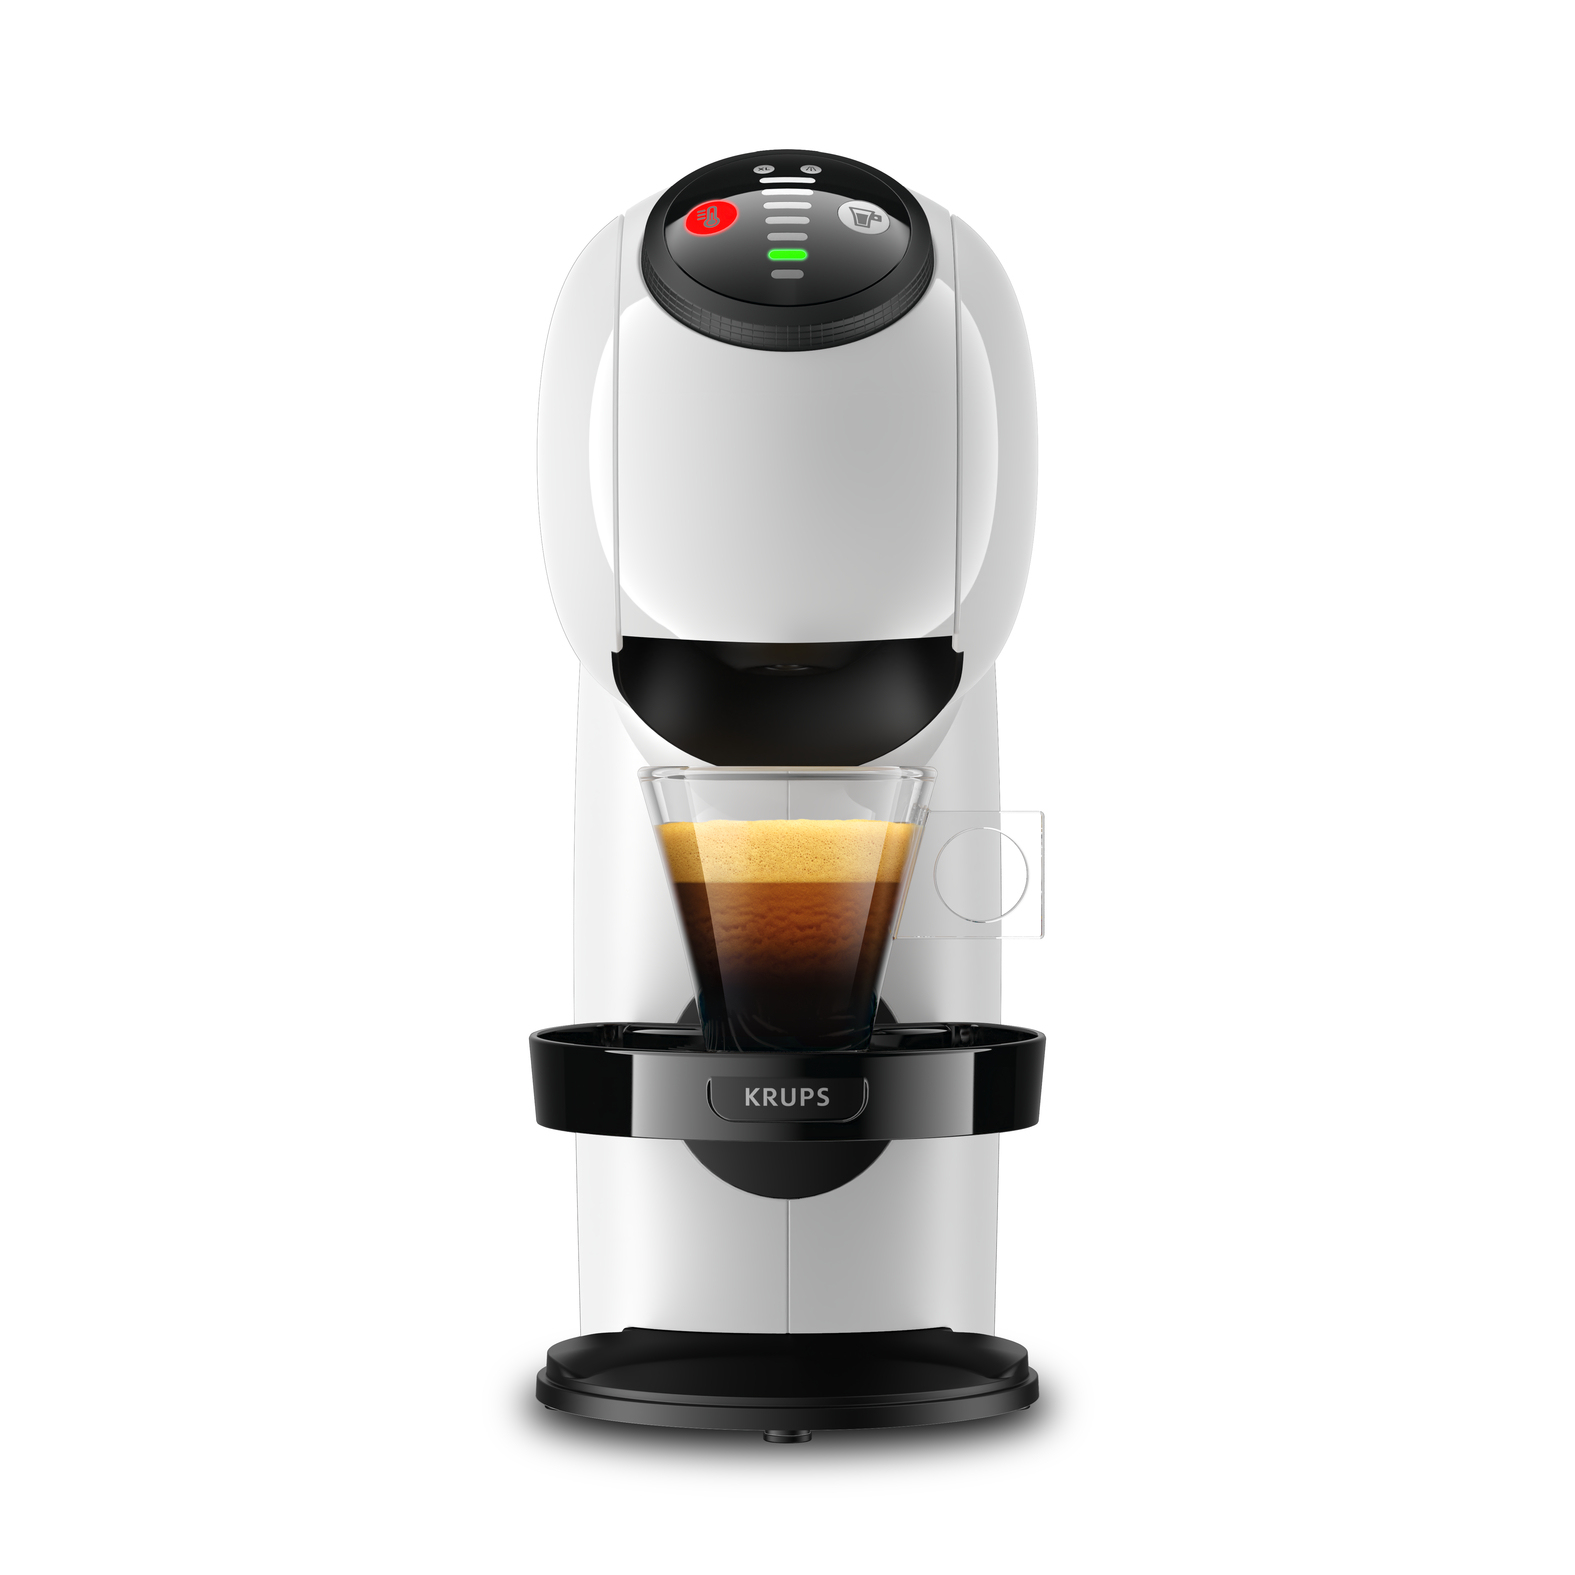 Macchina per caffè Krups KP2401 Automatica/Manuale espresso 0,8 L [KP2401]